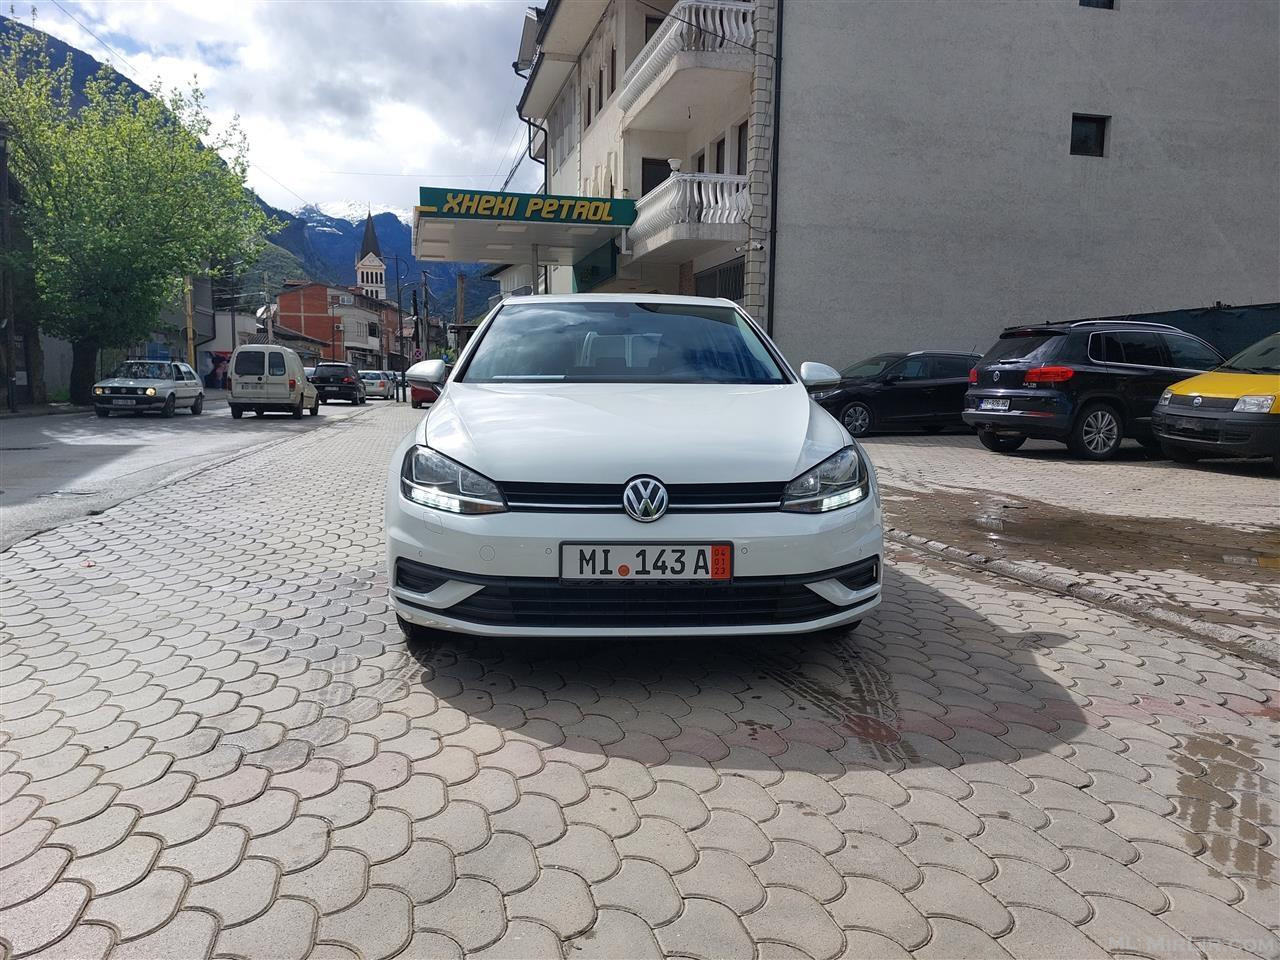 VW GOLF 7.5 1.6 TDI MANUEL FACELIFT ME DOGAN VITI SAKT 2018